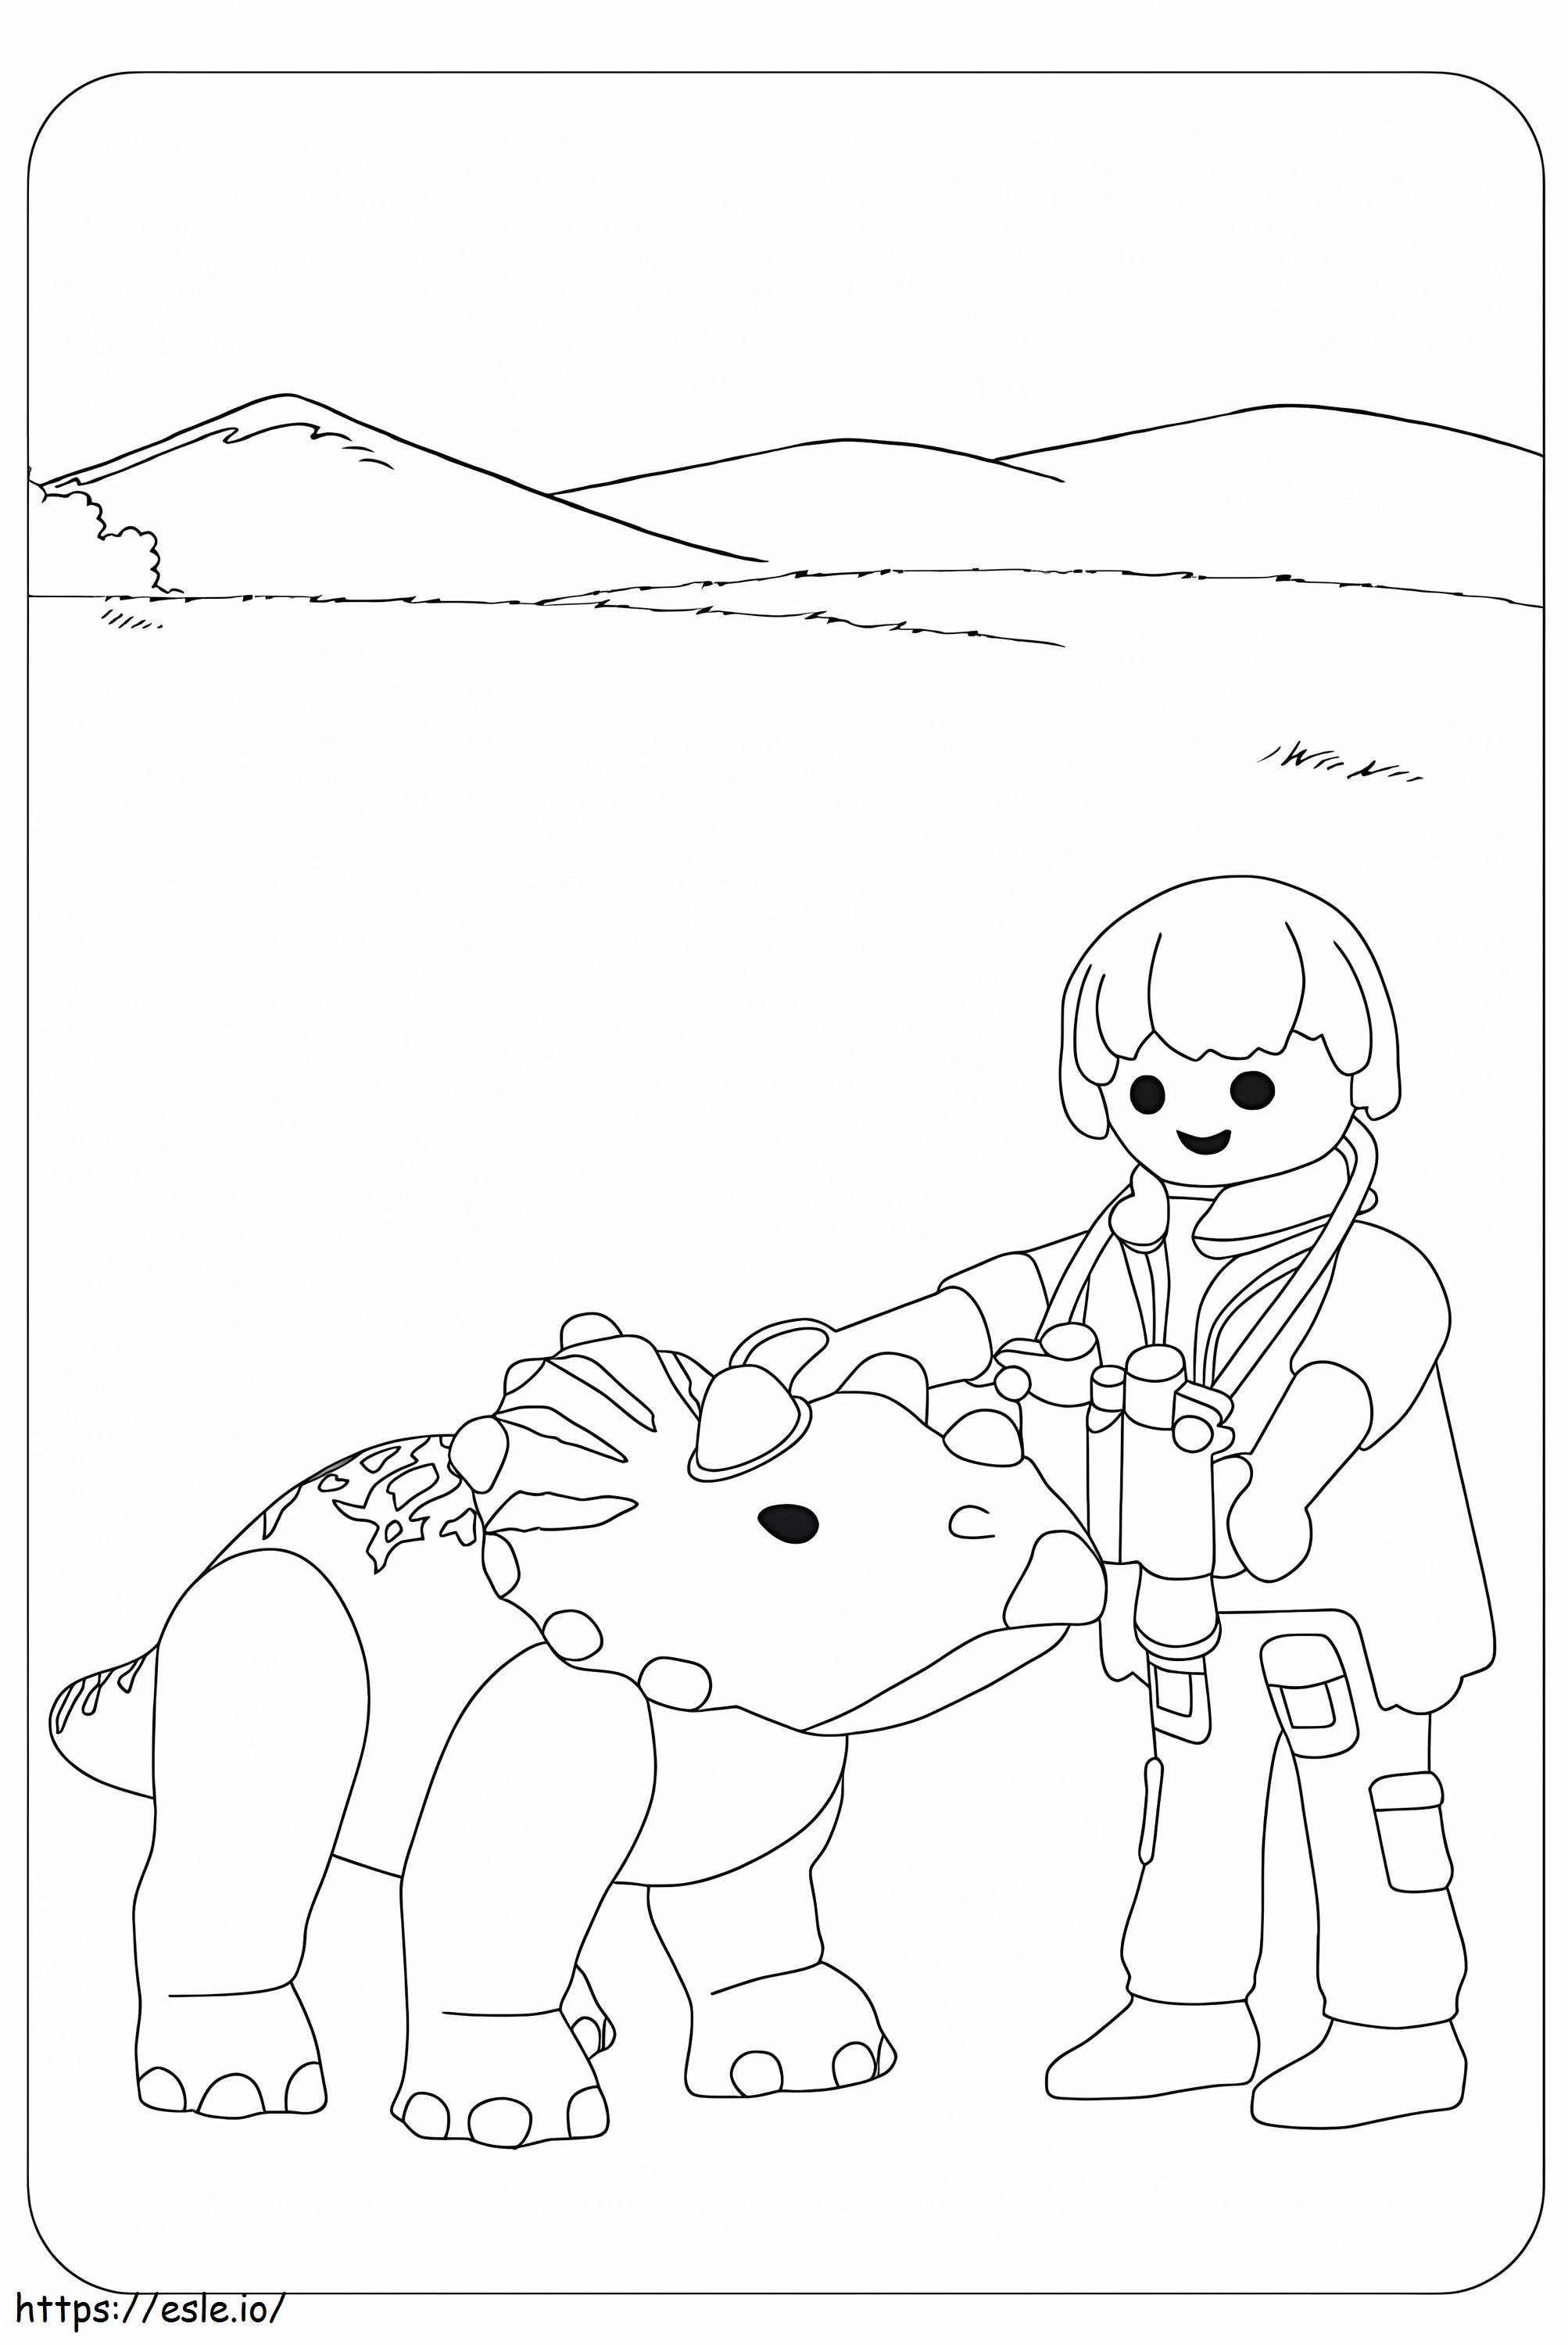 Playmobil Dino coloring page